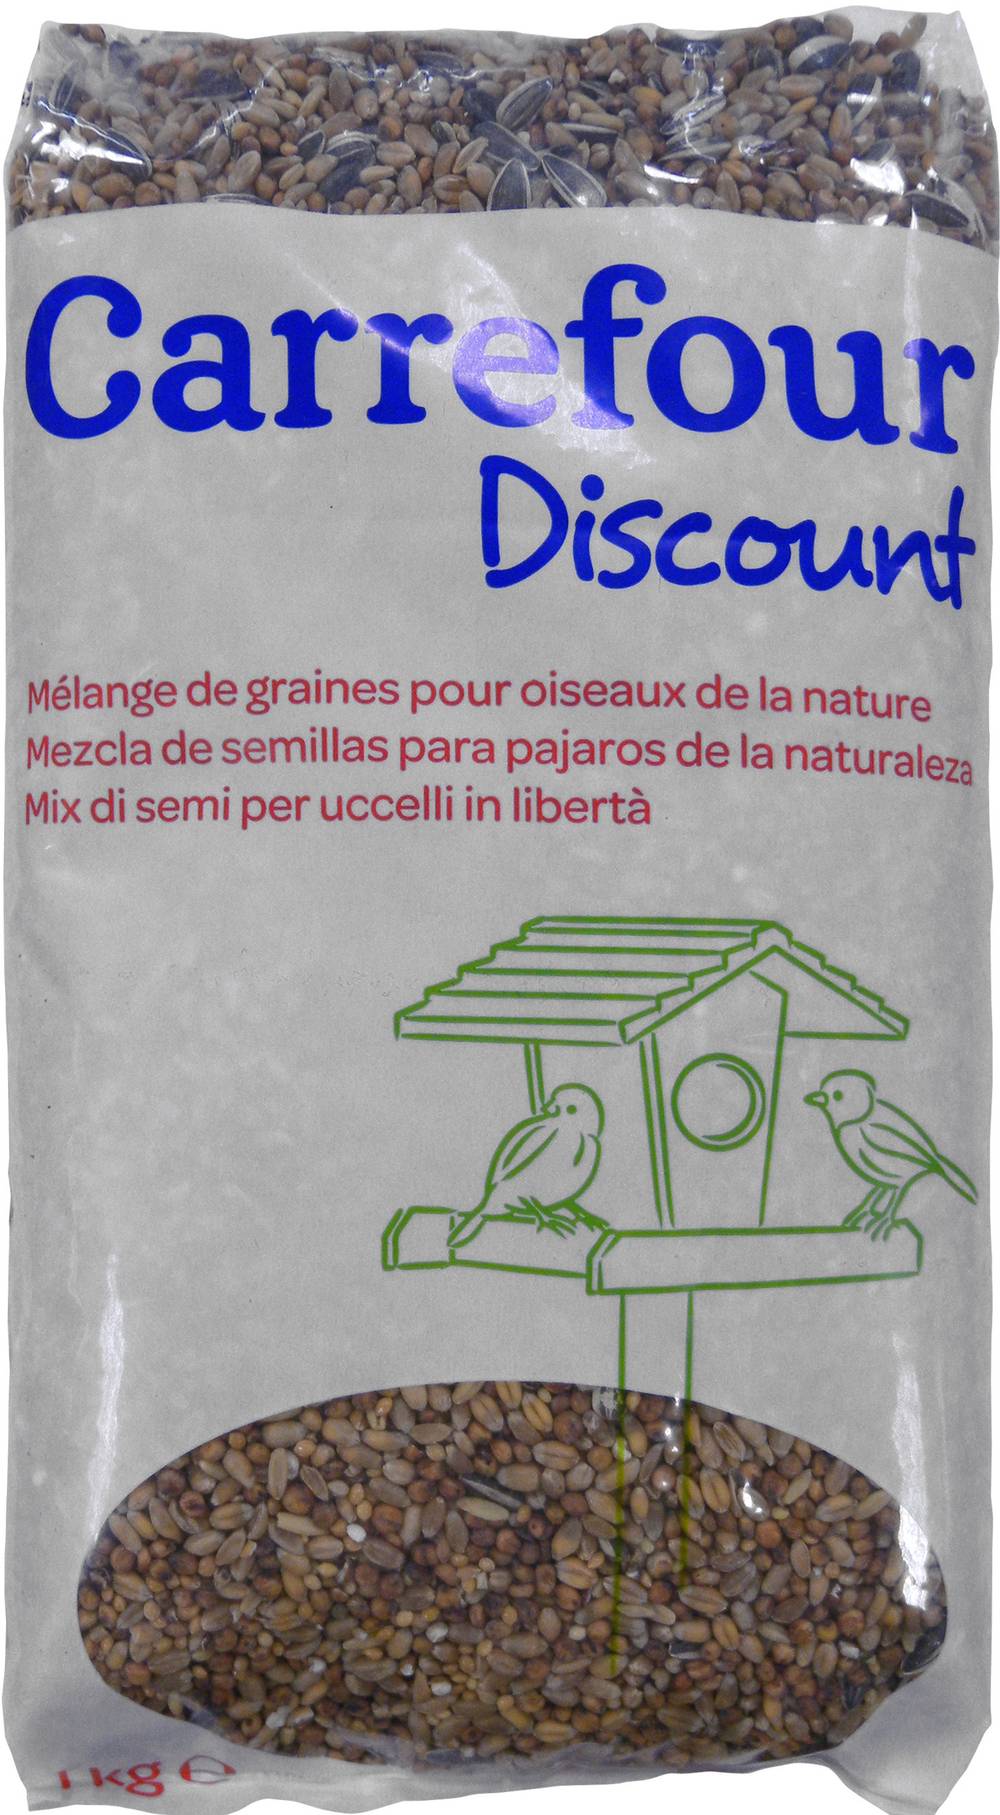 Carrefour Discount - Graines pour oiseaux de la nature